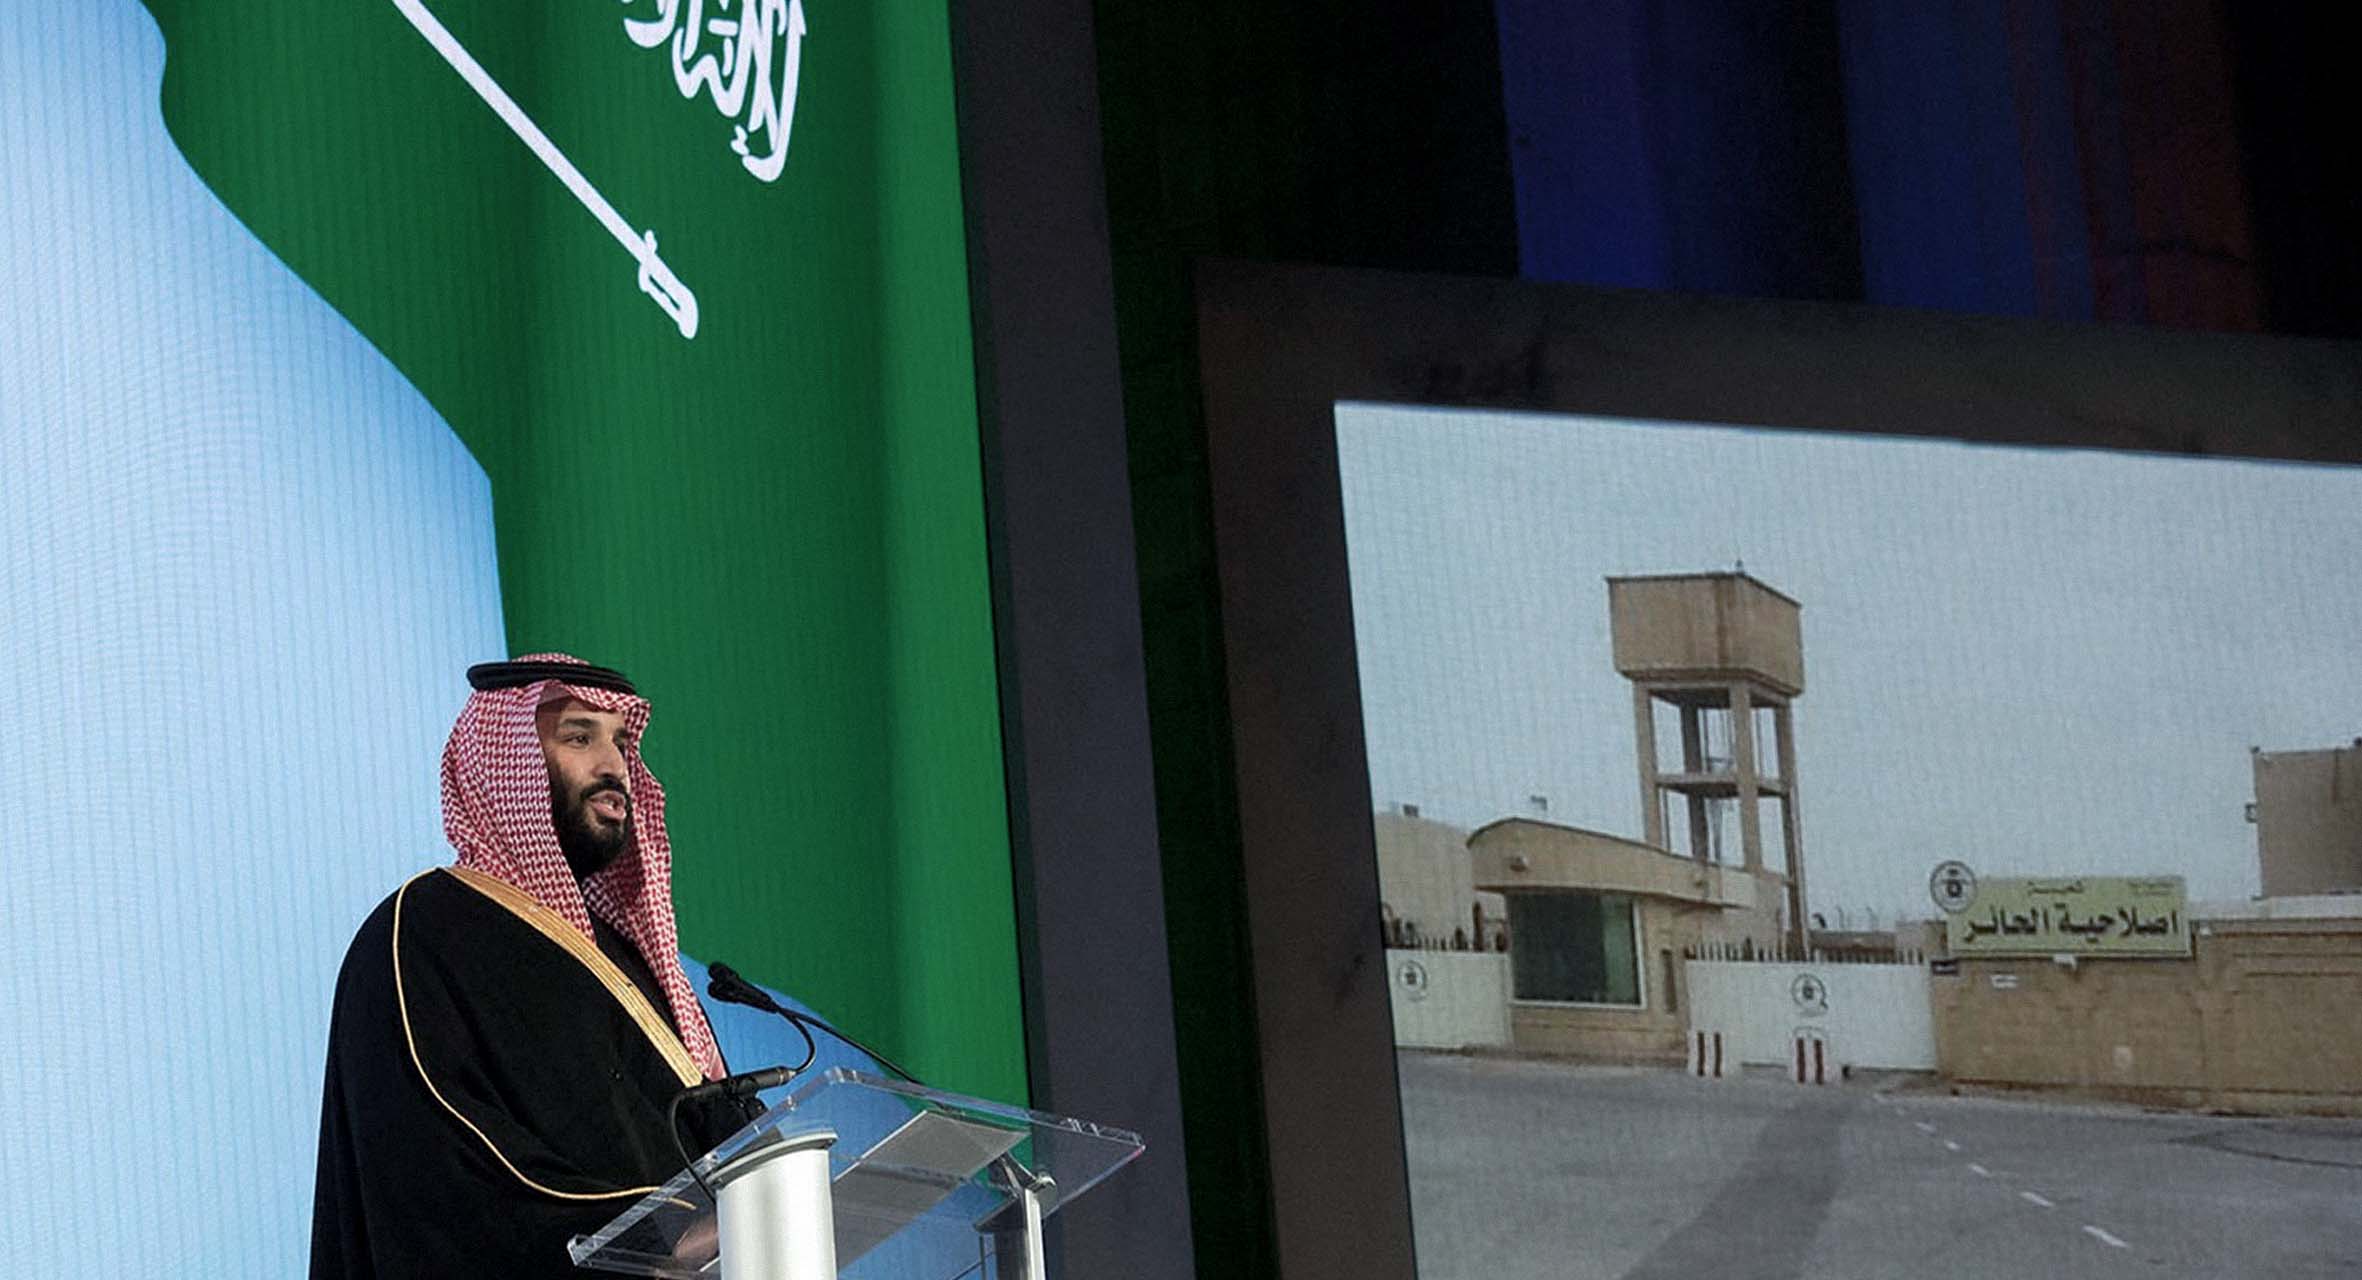 صورة ابن سلمان يقلِّل اعتماد السعودية على النفط ويستثمر باعتقال ٣٠٠ مسؤول جديد